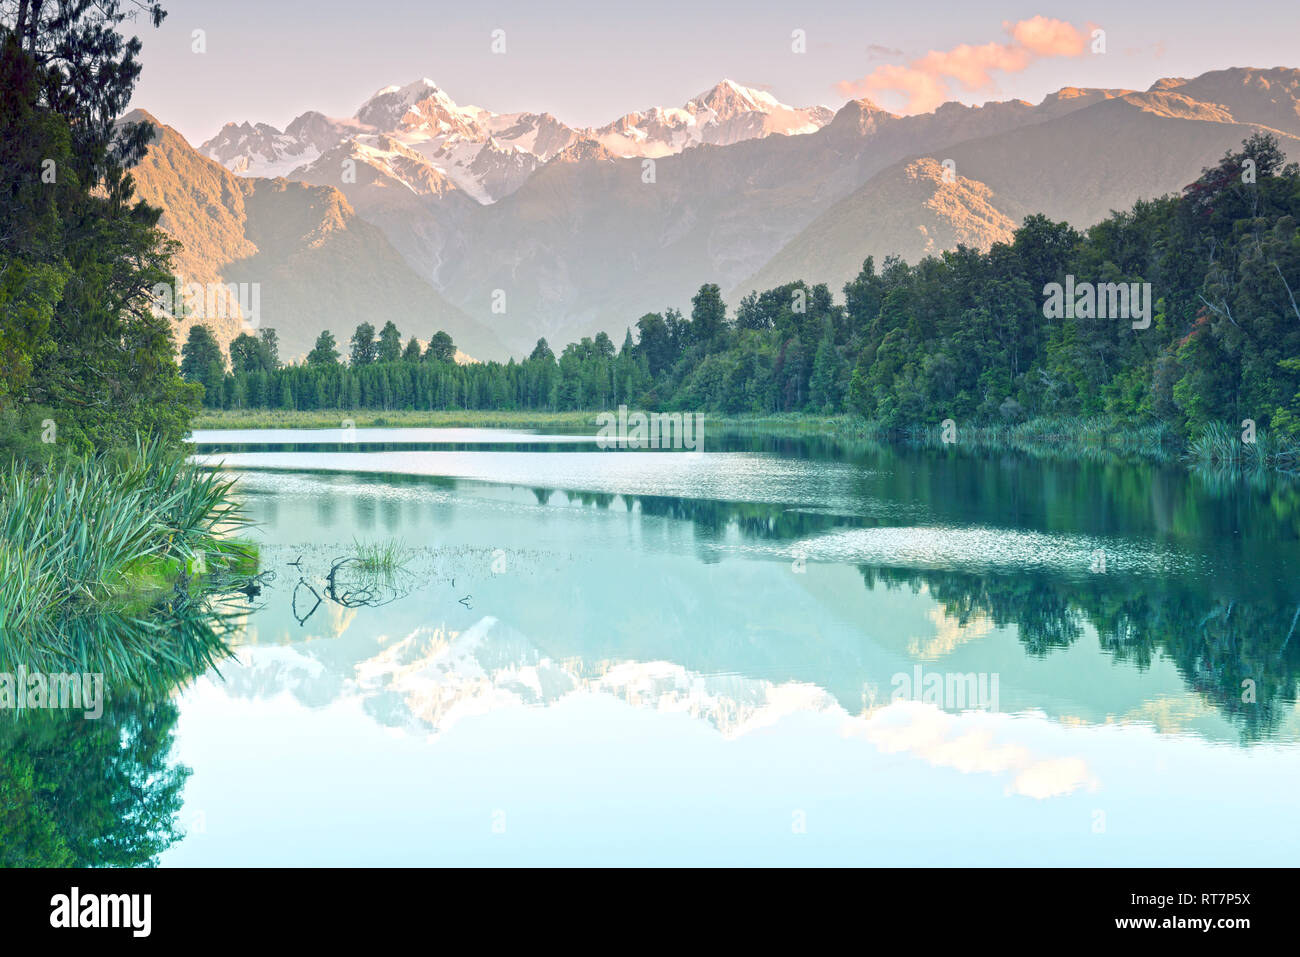 Reflet de Mt Cook (Aoraki) et Mt Tasman, sur le lac Matheson, New Zealand Banque D'Images